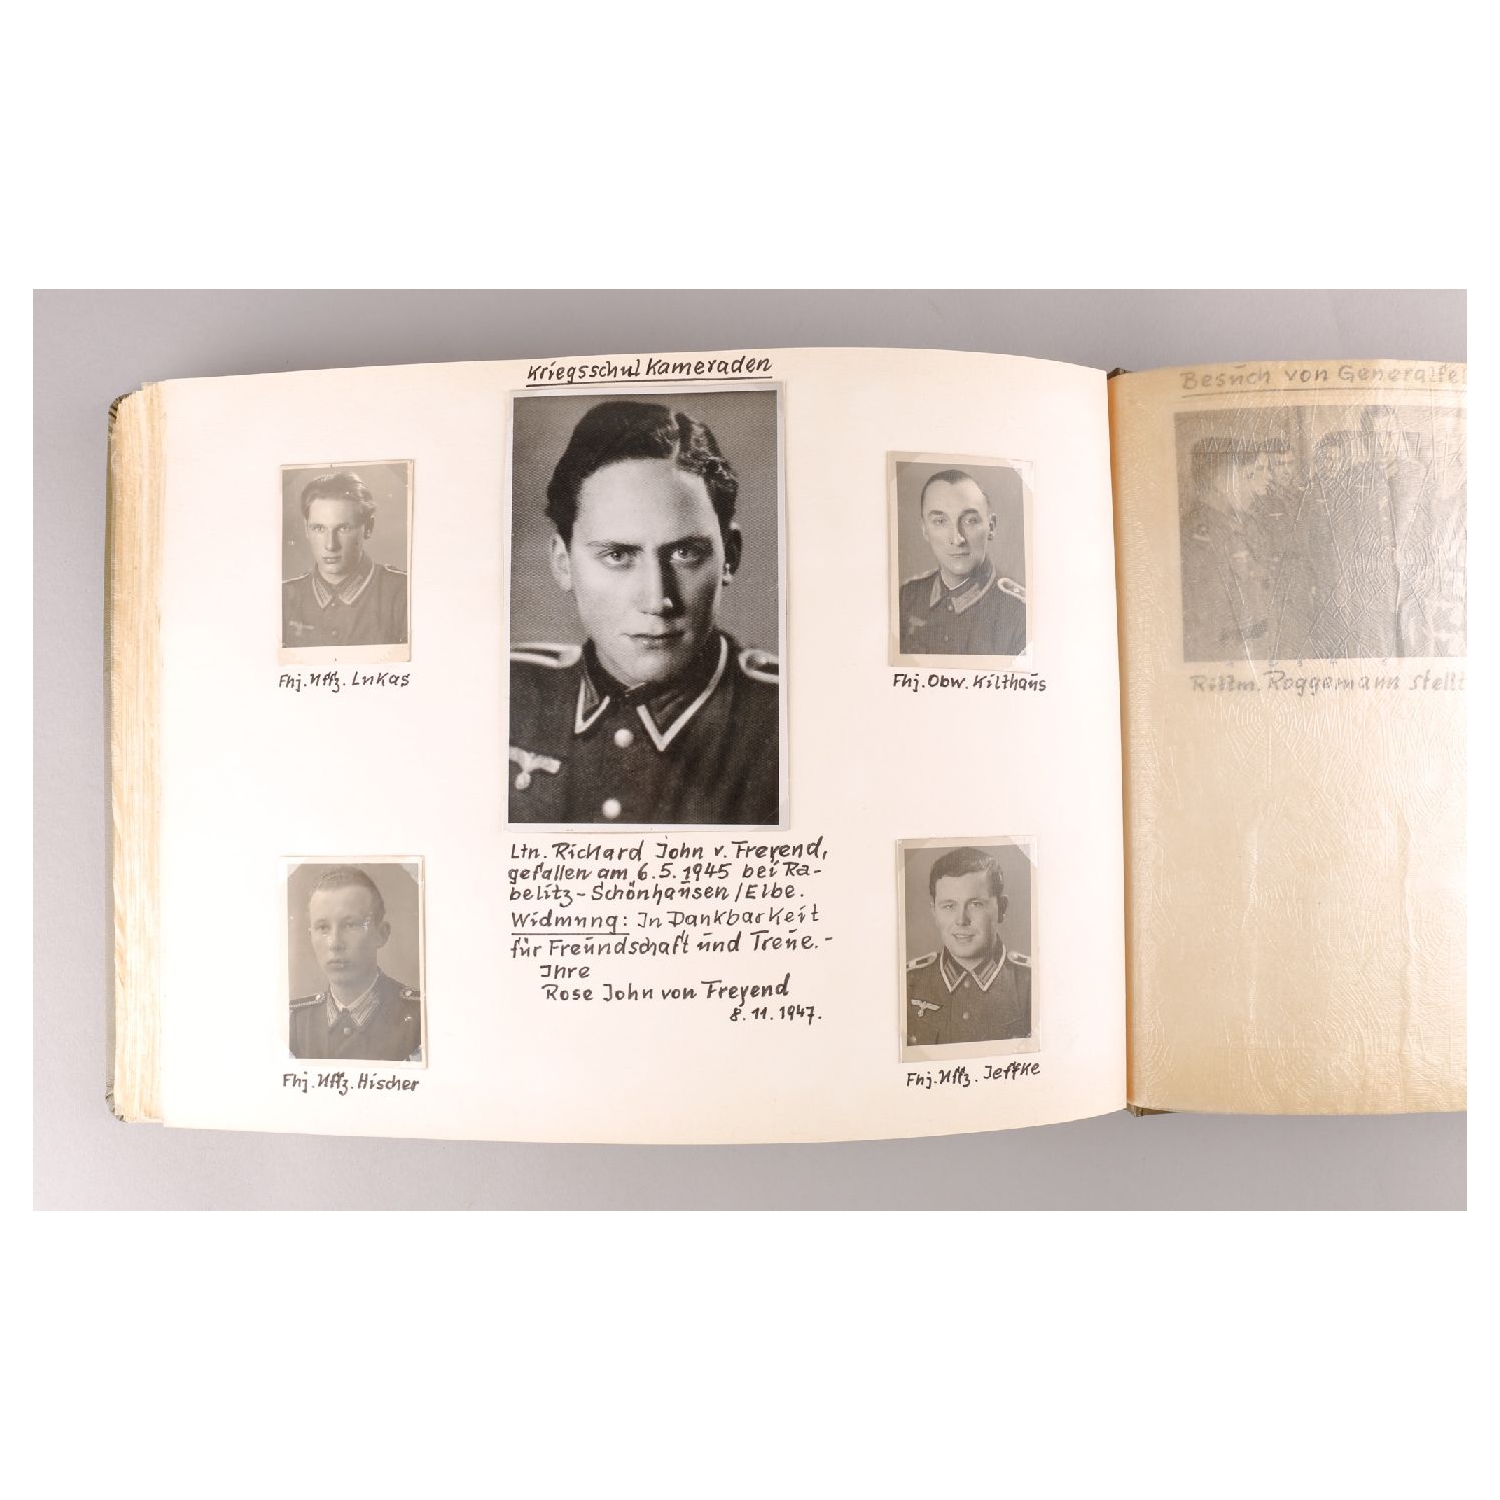 2.Weltkrieg Fotoalbum Major Wilhelm Graf von der Schulenburg